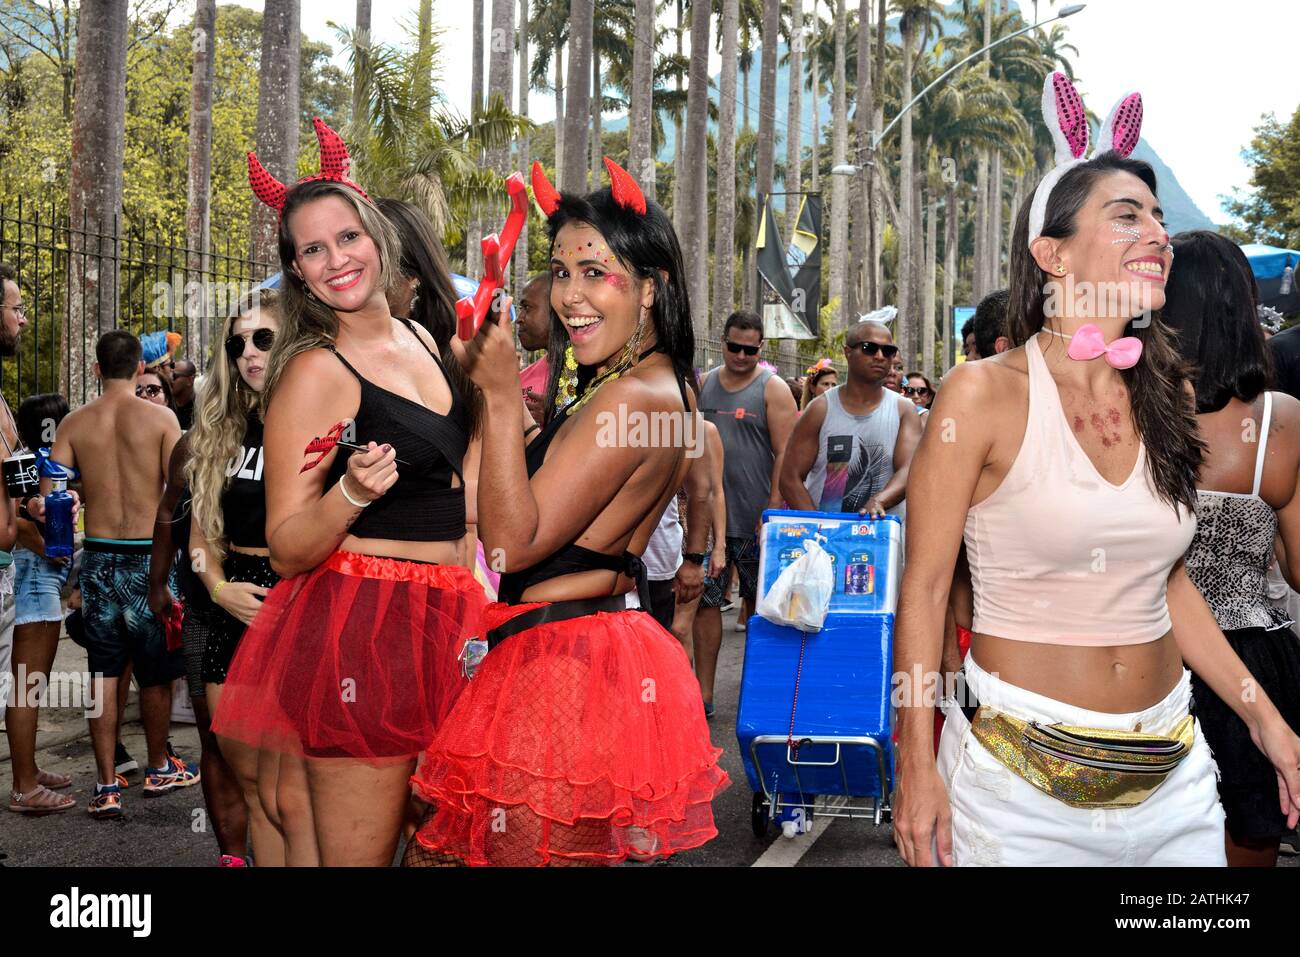 Personas Con Disfraces De Estilo Vence Carnaval Durante Las Fiestas  Fotografía editorial - Imagen de partidos, feliz: 268671662